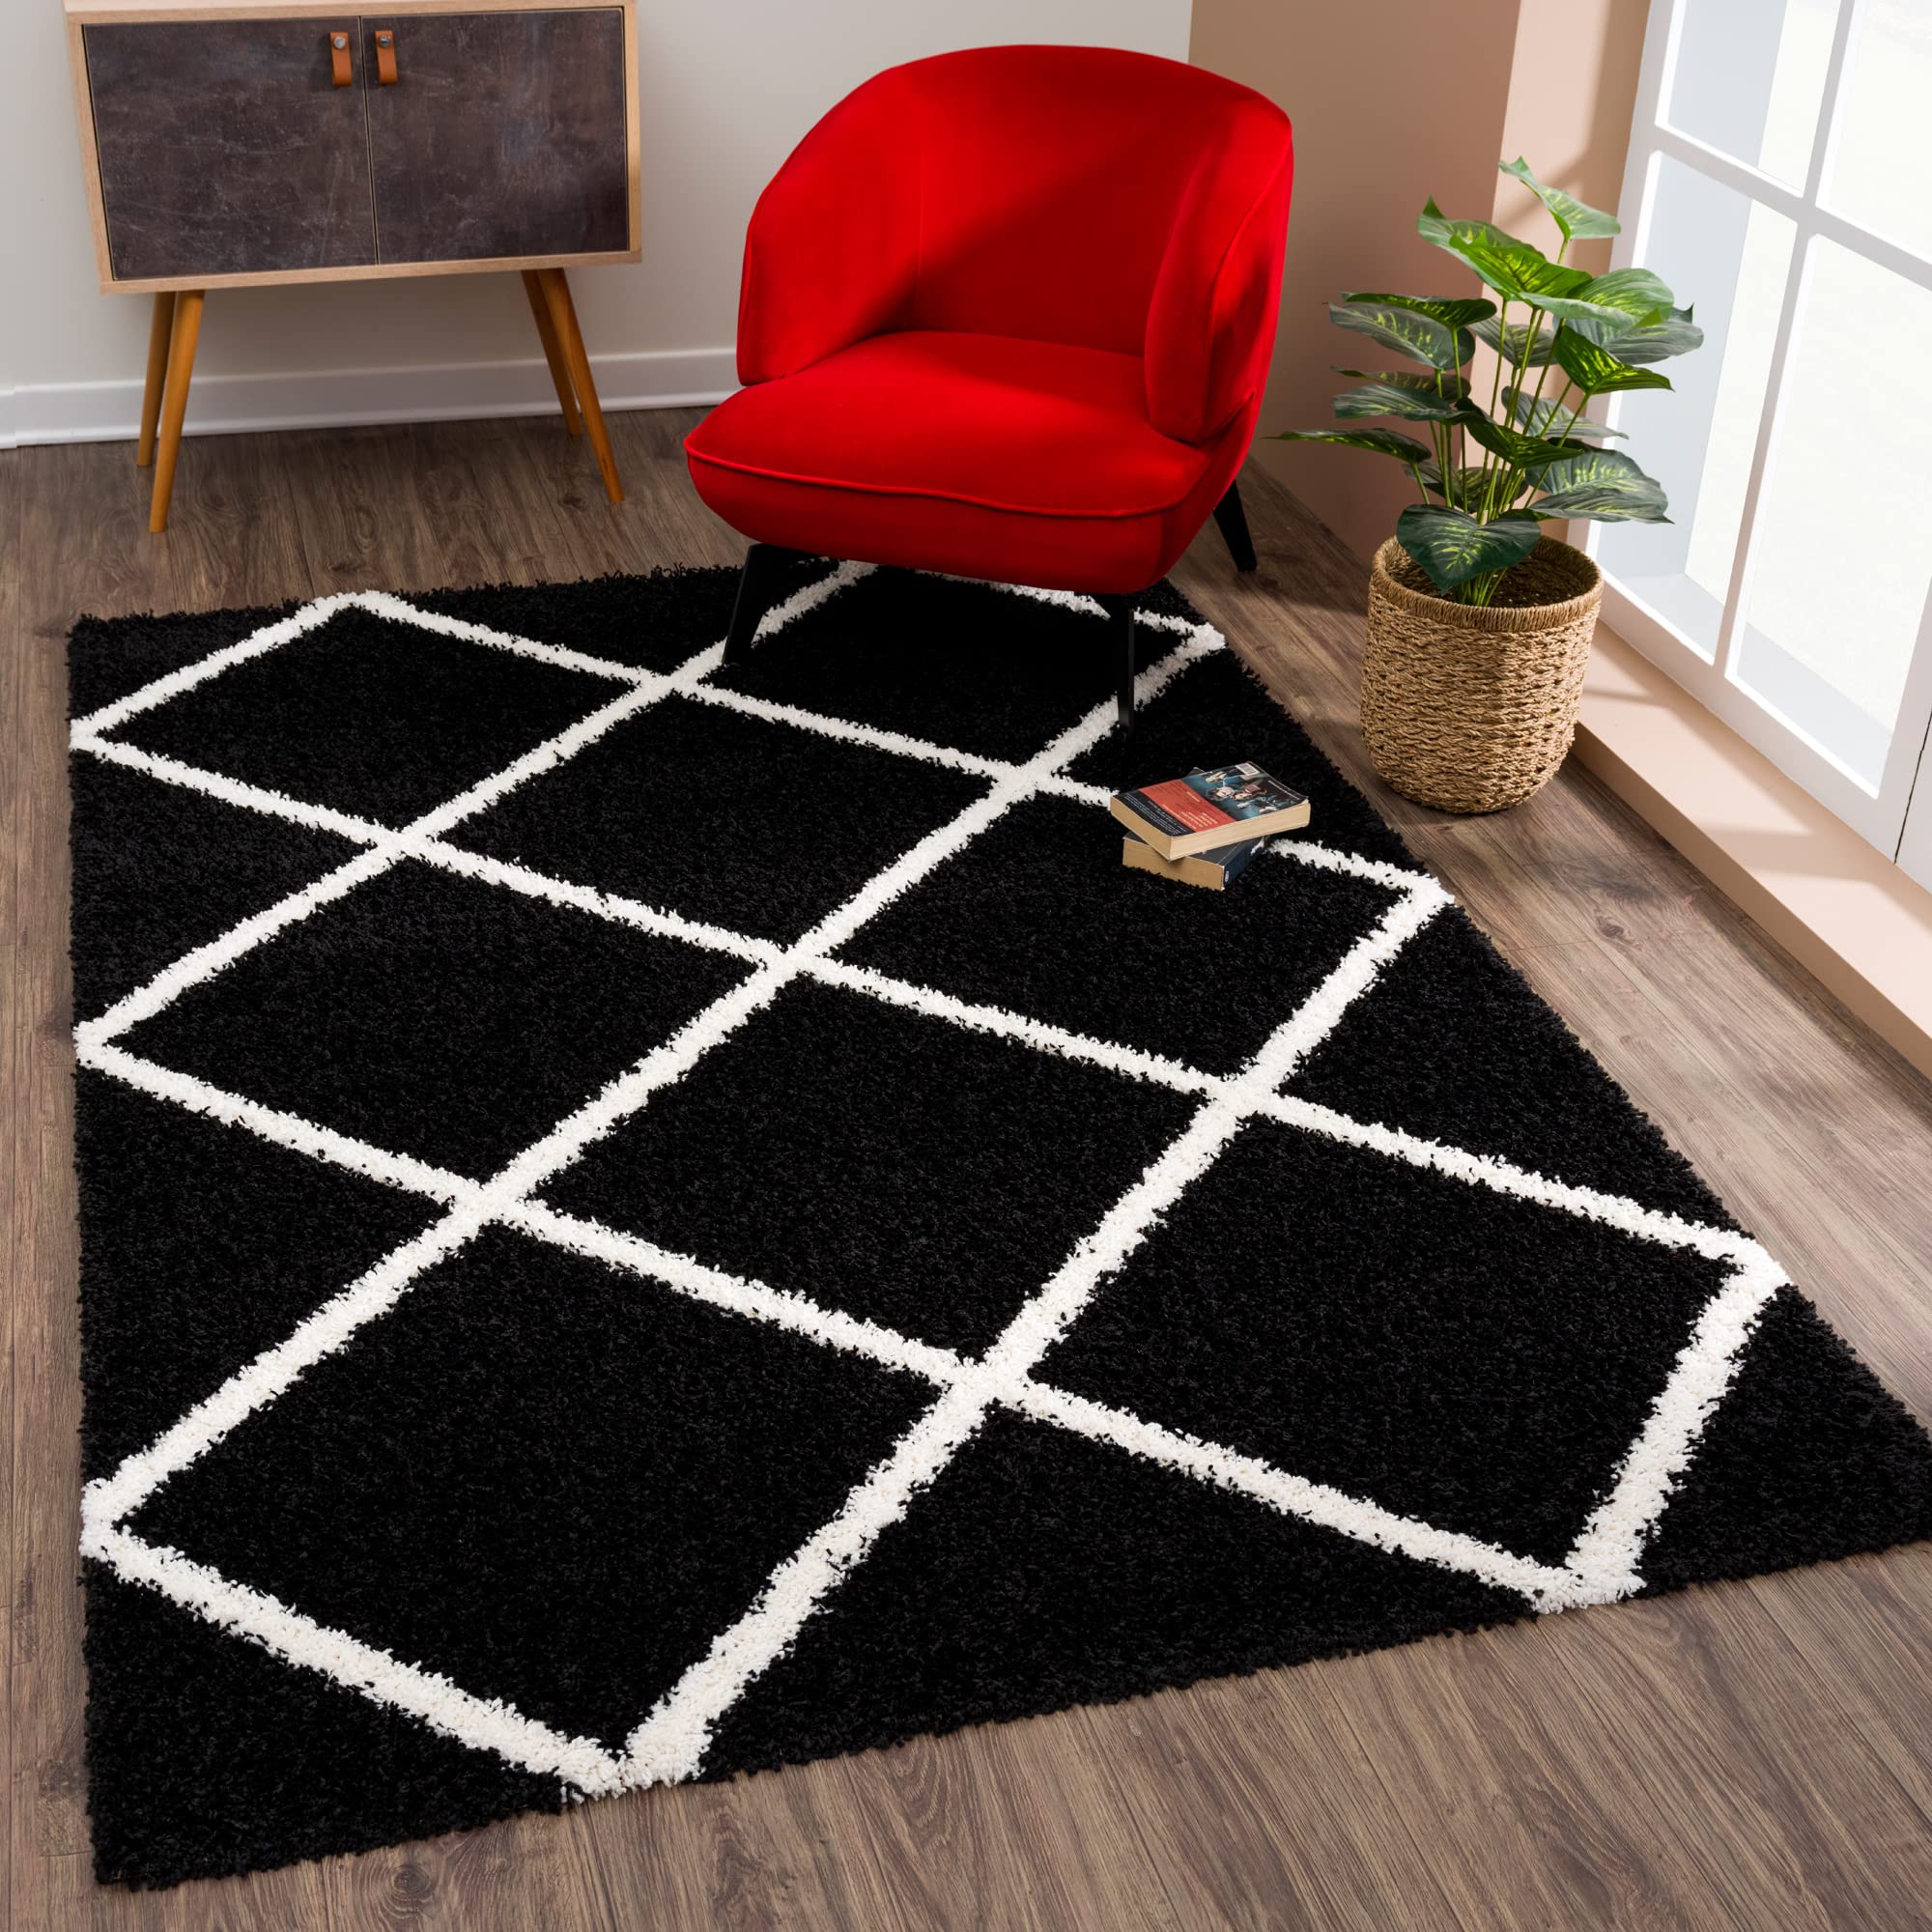 SANAT Madrid Shaggy Teppich - Hochflor Teppiche für Wohnzimmer, Schlafzimmer, Küche - Schwarz, Größe: 80x150 cm